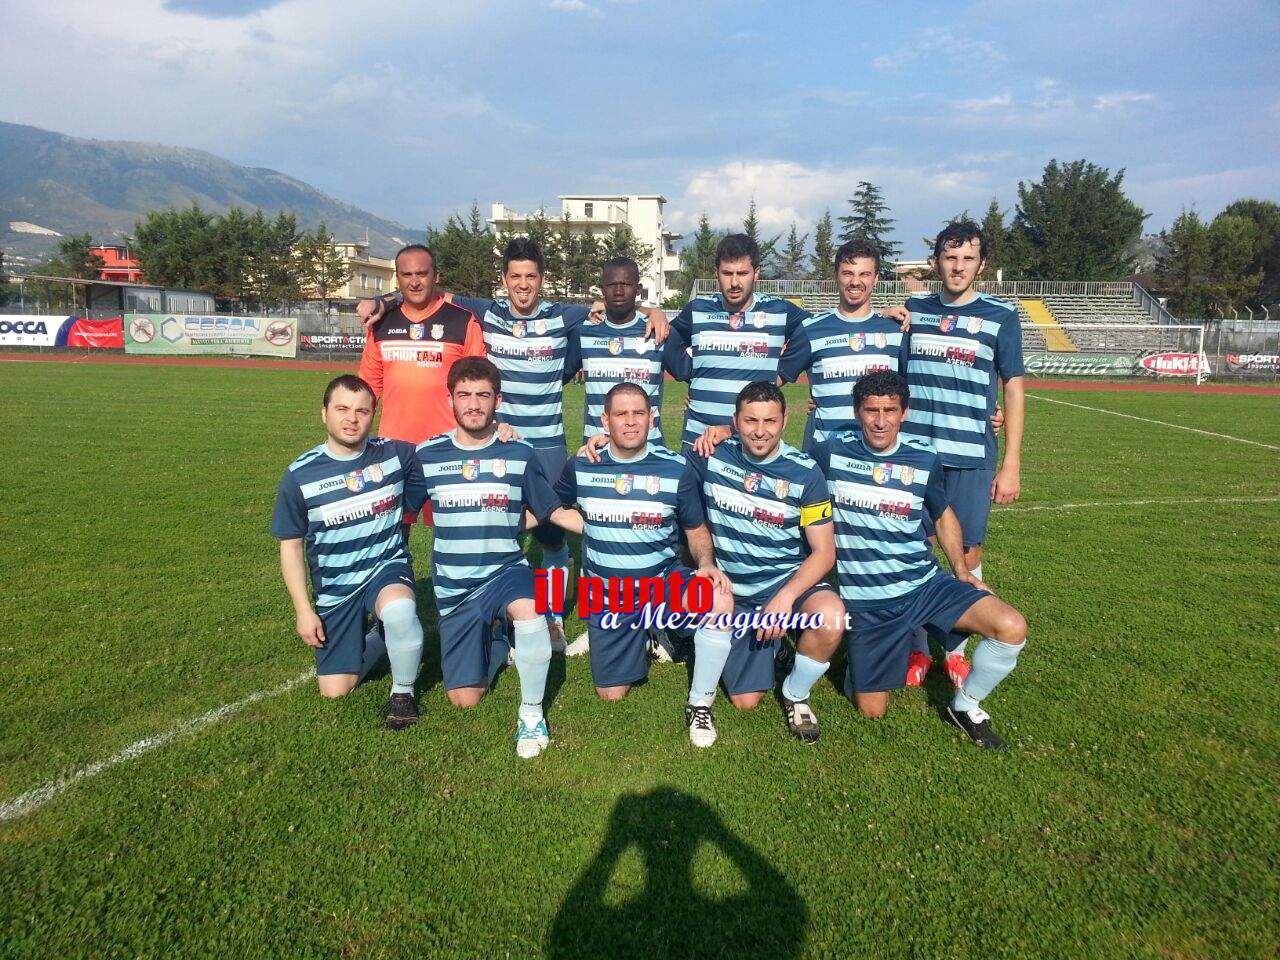 Csi: Professional Service si laurea Campione provinciale battendo 3 a 1 La Ferrara